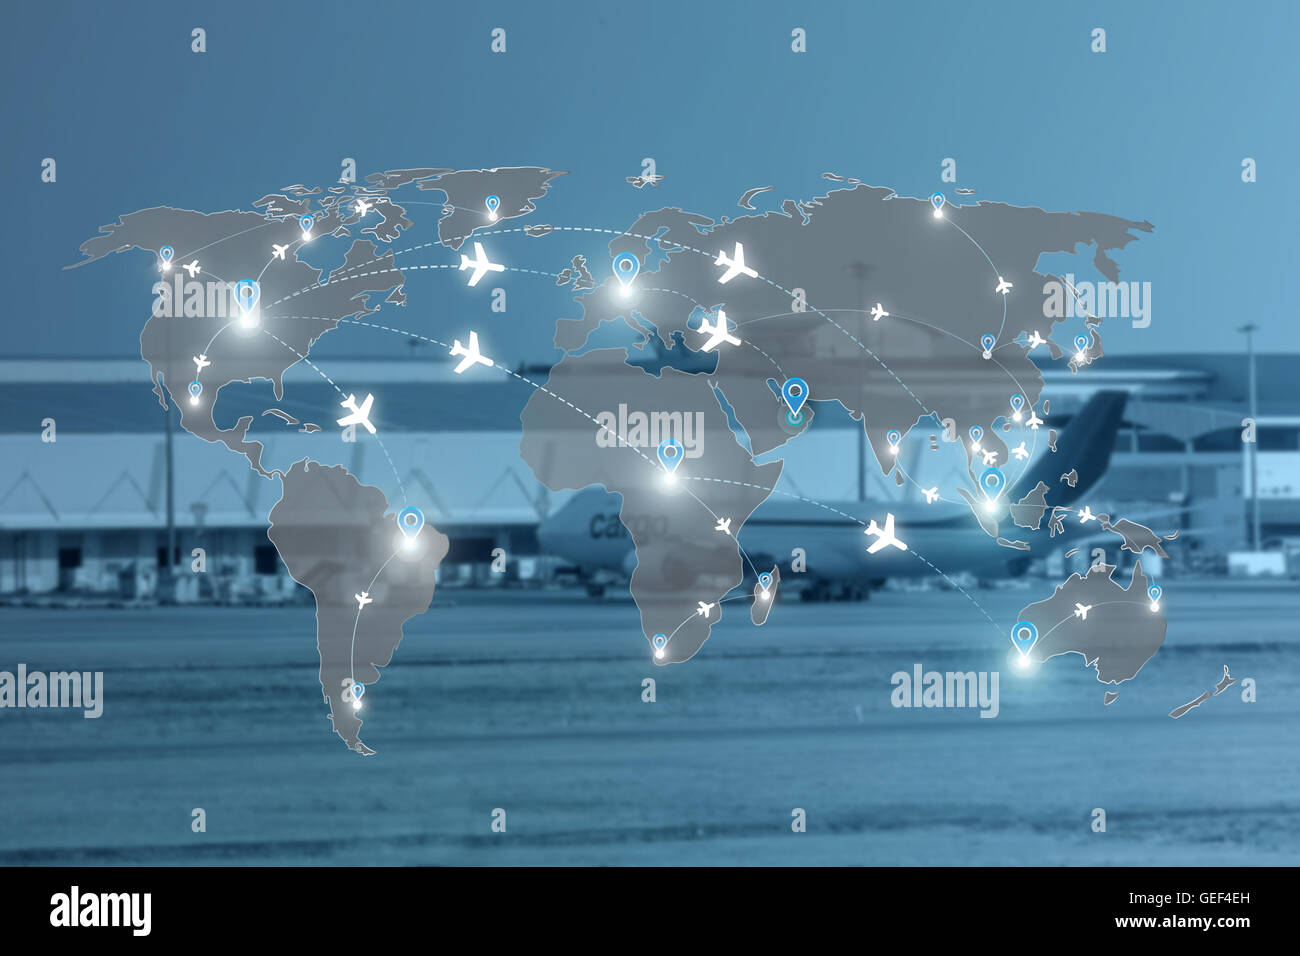 Karte von Flug Strecken Flugzeuge Netznutzung für weltweite Reisen, Import, Export, Logistik-Netzwerk-Konzept. Stockfoto